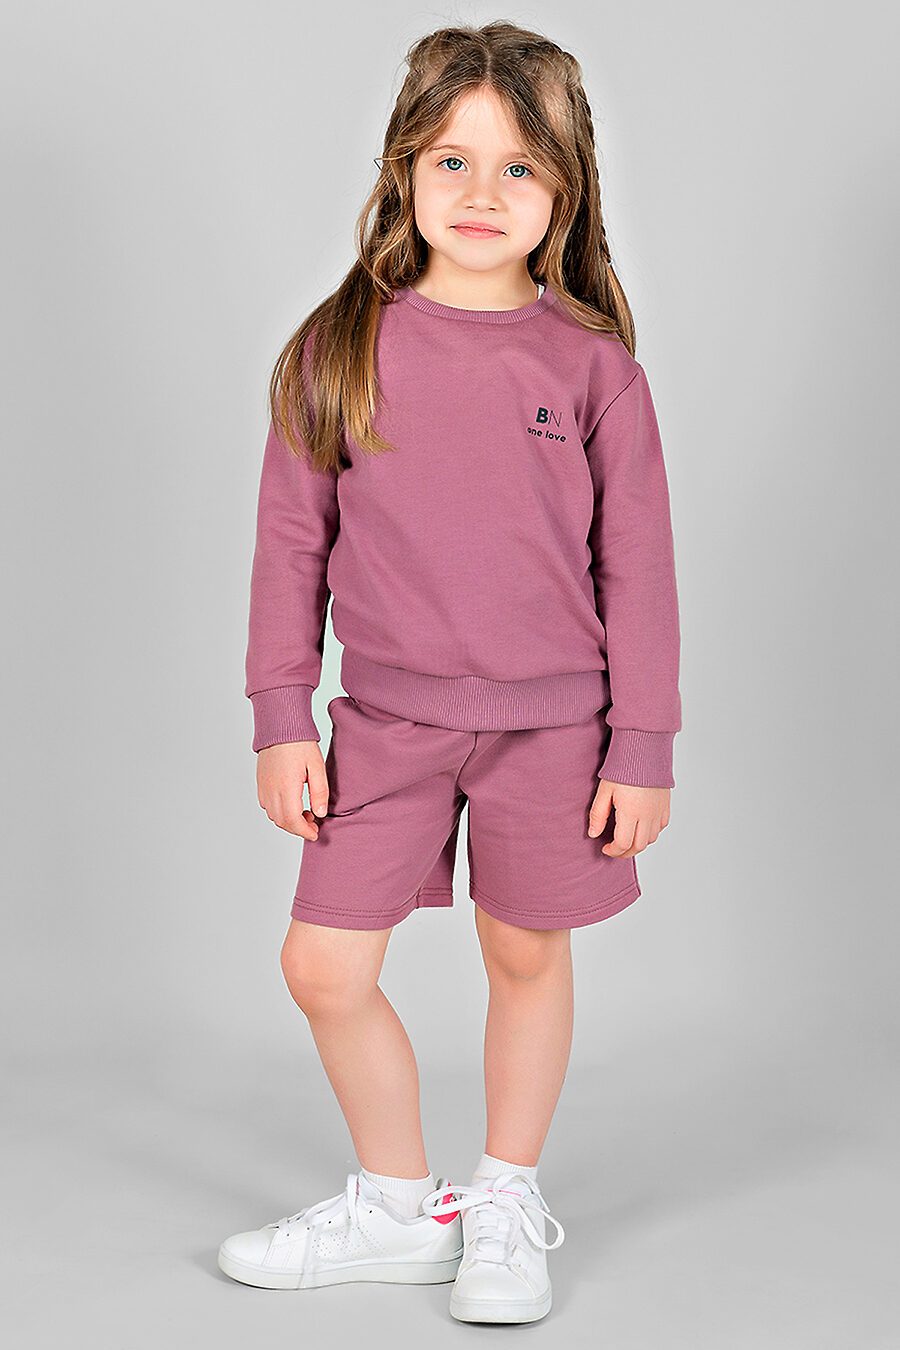 Шорты для девочек BOSSA NOVA 665294 купить оптом от производителя. Совместная покупка детской одежды в OptMoyo